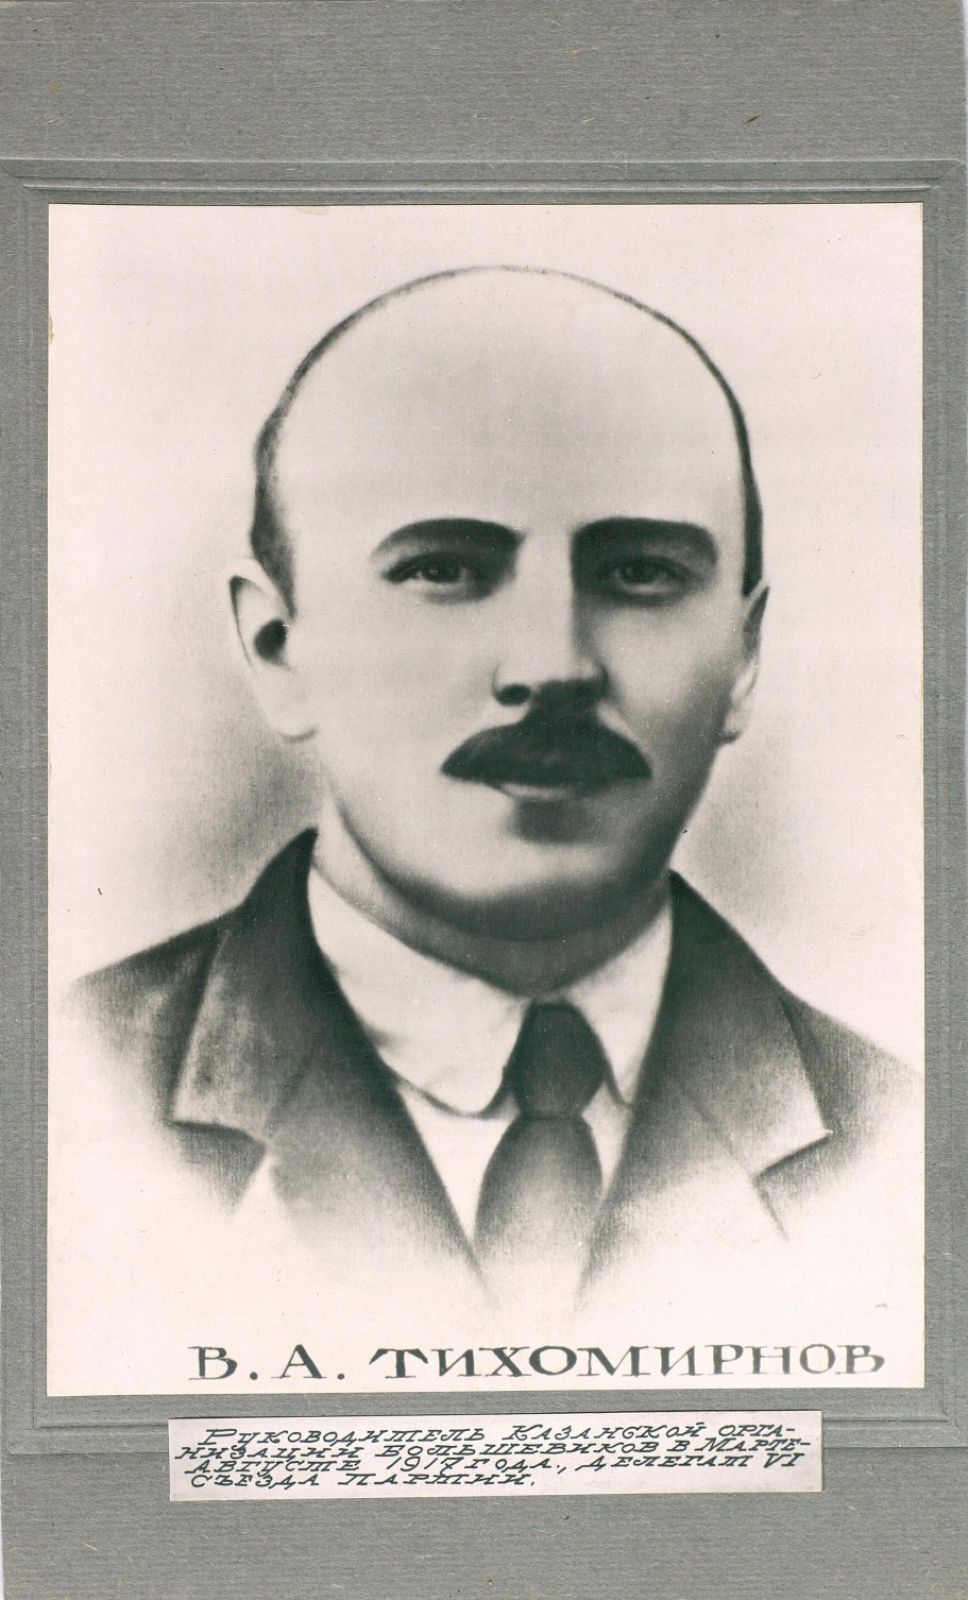 Виктор Тихомирнов (1889-1919) - председатель Казанской организации РКП(б) в 1917 году. В 1927 году в его честь была названа одна из улиц Казани, начинающаяся недалеко от улицы Тукая. 